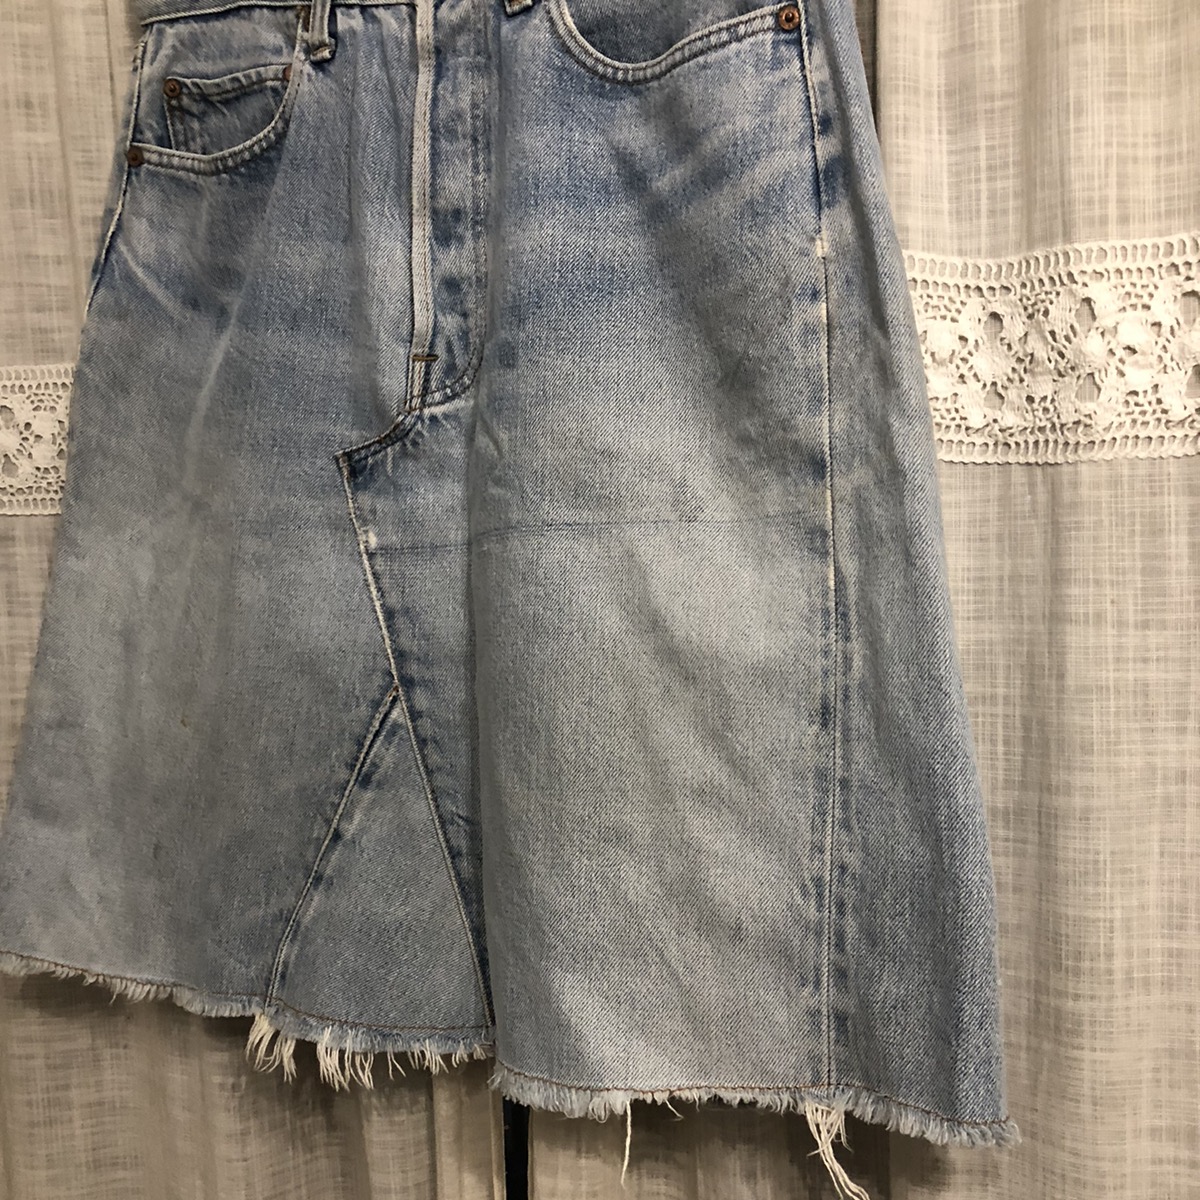 Single digit Vintage levi’s skirt - 3